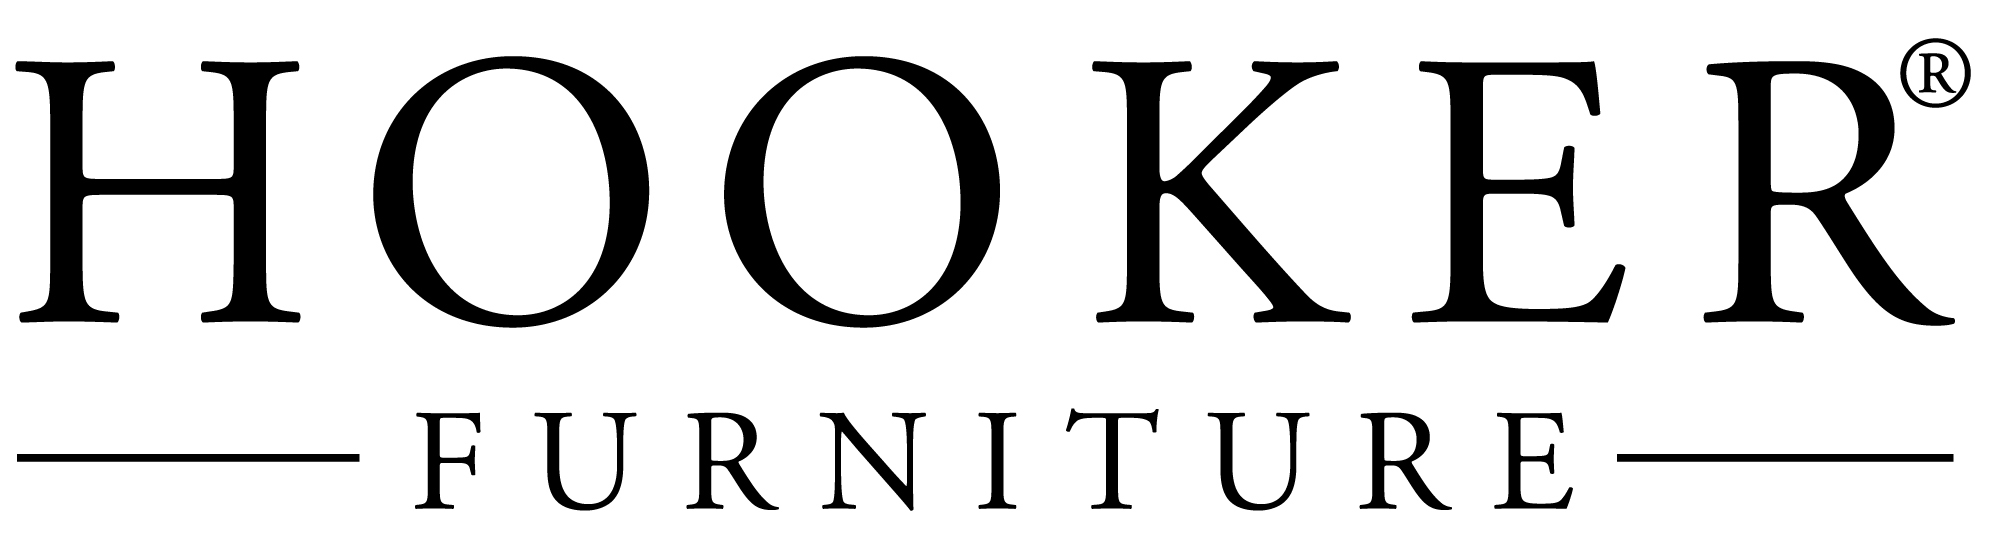 Hooker Furniture Logo